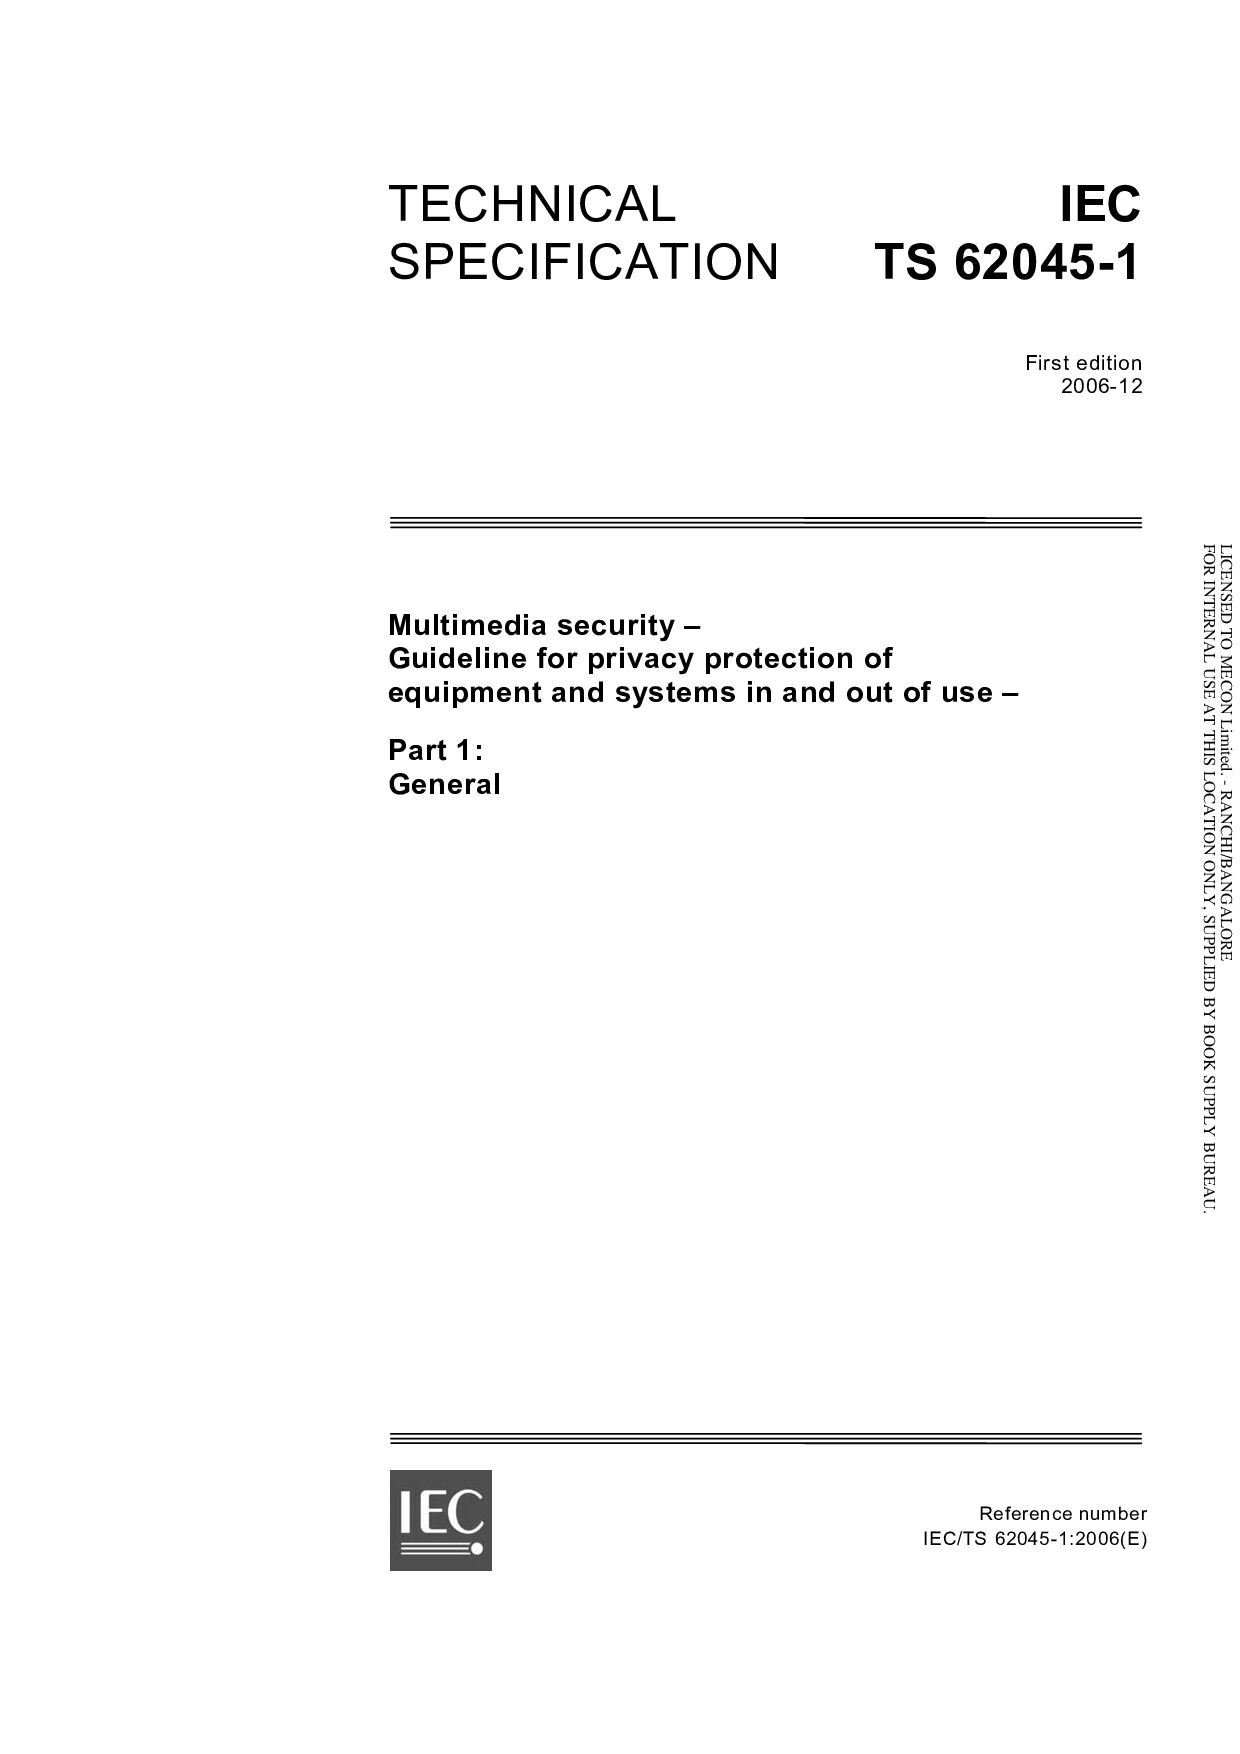 IEC TS 62045-1:2006